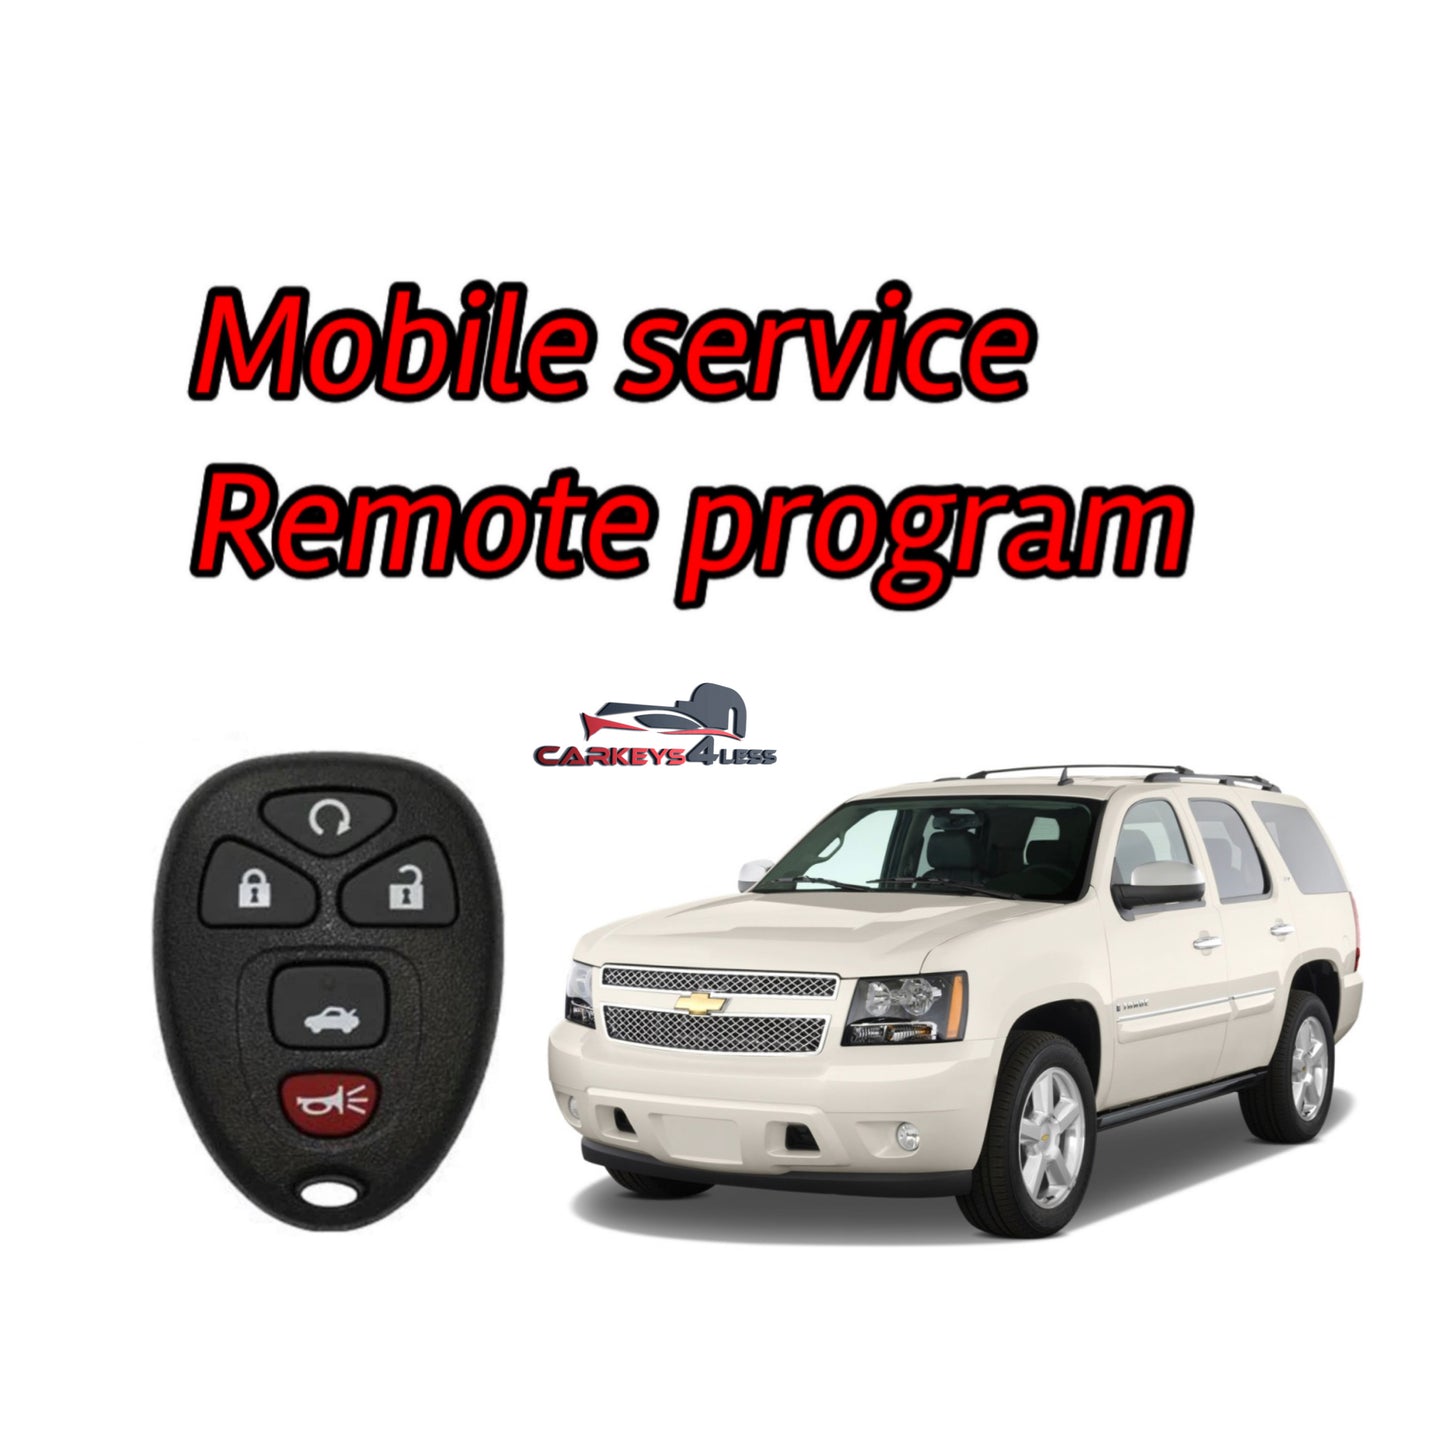 Mobile service for gm remote program